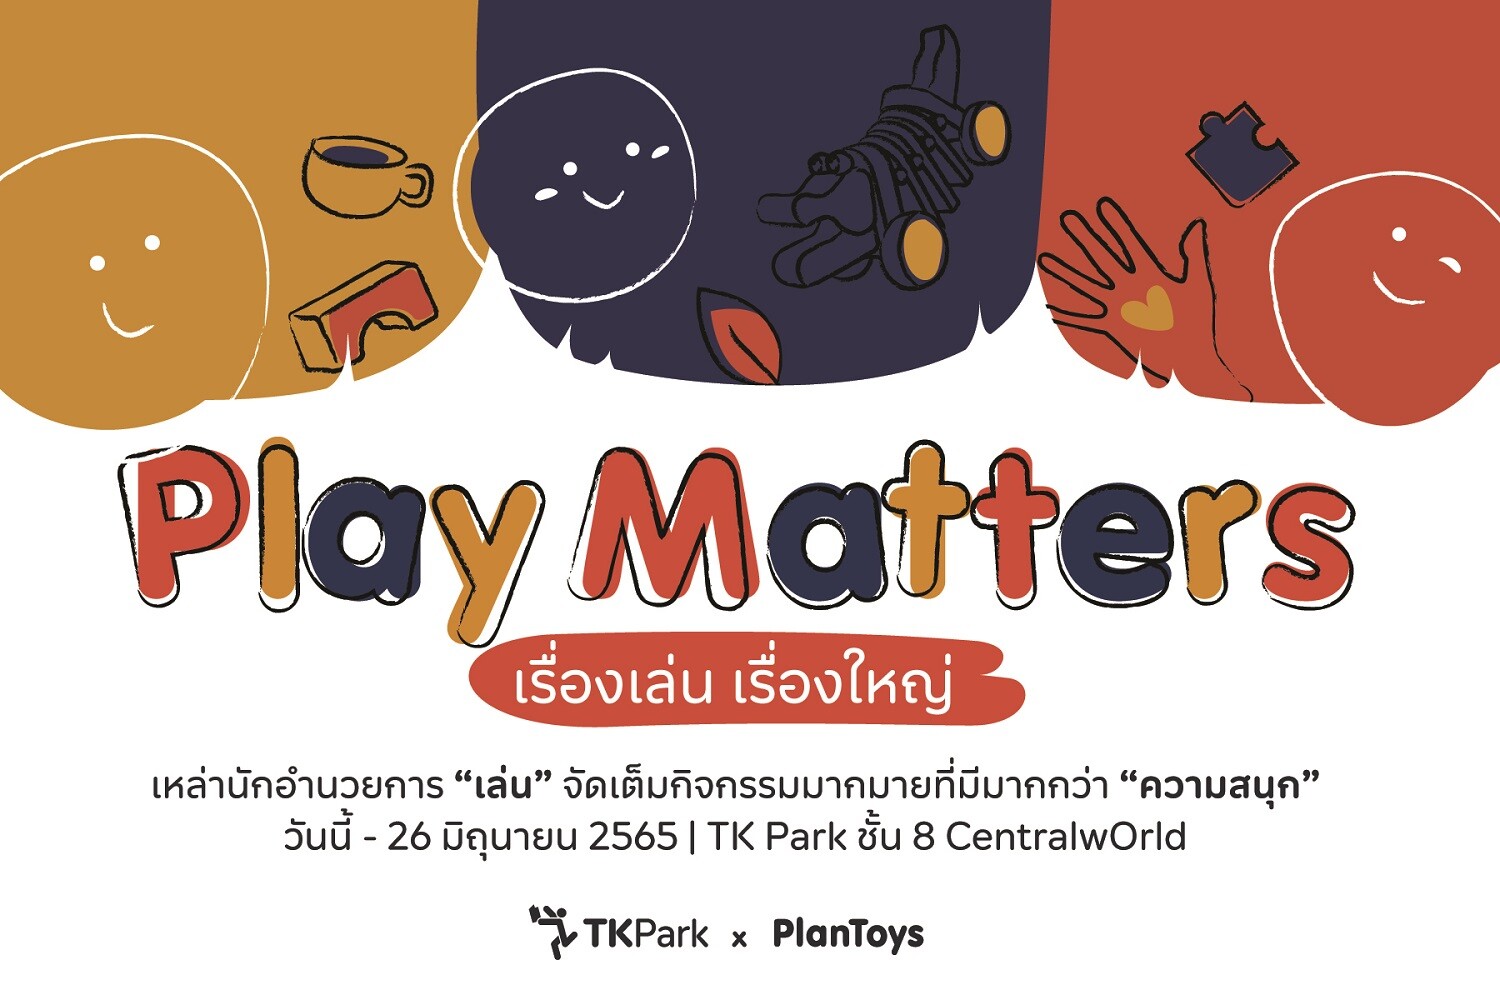 ทีเคพาร์ค จับมือ แปลนทอยส์ ชวนเล่นและฟังเสวนา สร้างความเข้าใจเรื่องของ "การเล่น" ใน  "Play Matters เรื่องเล่นเรื่องใหญ่"